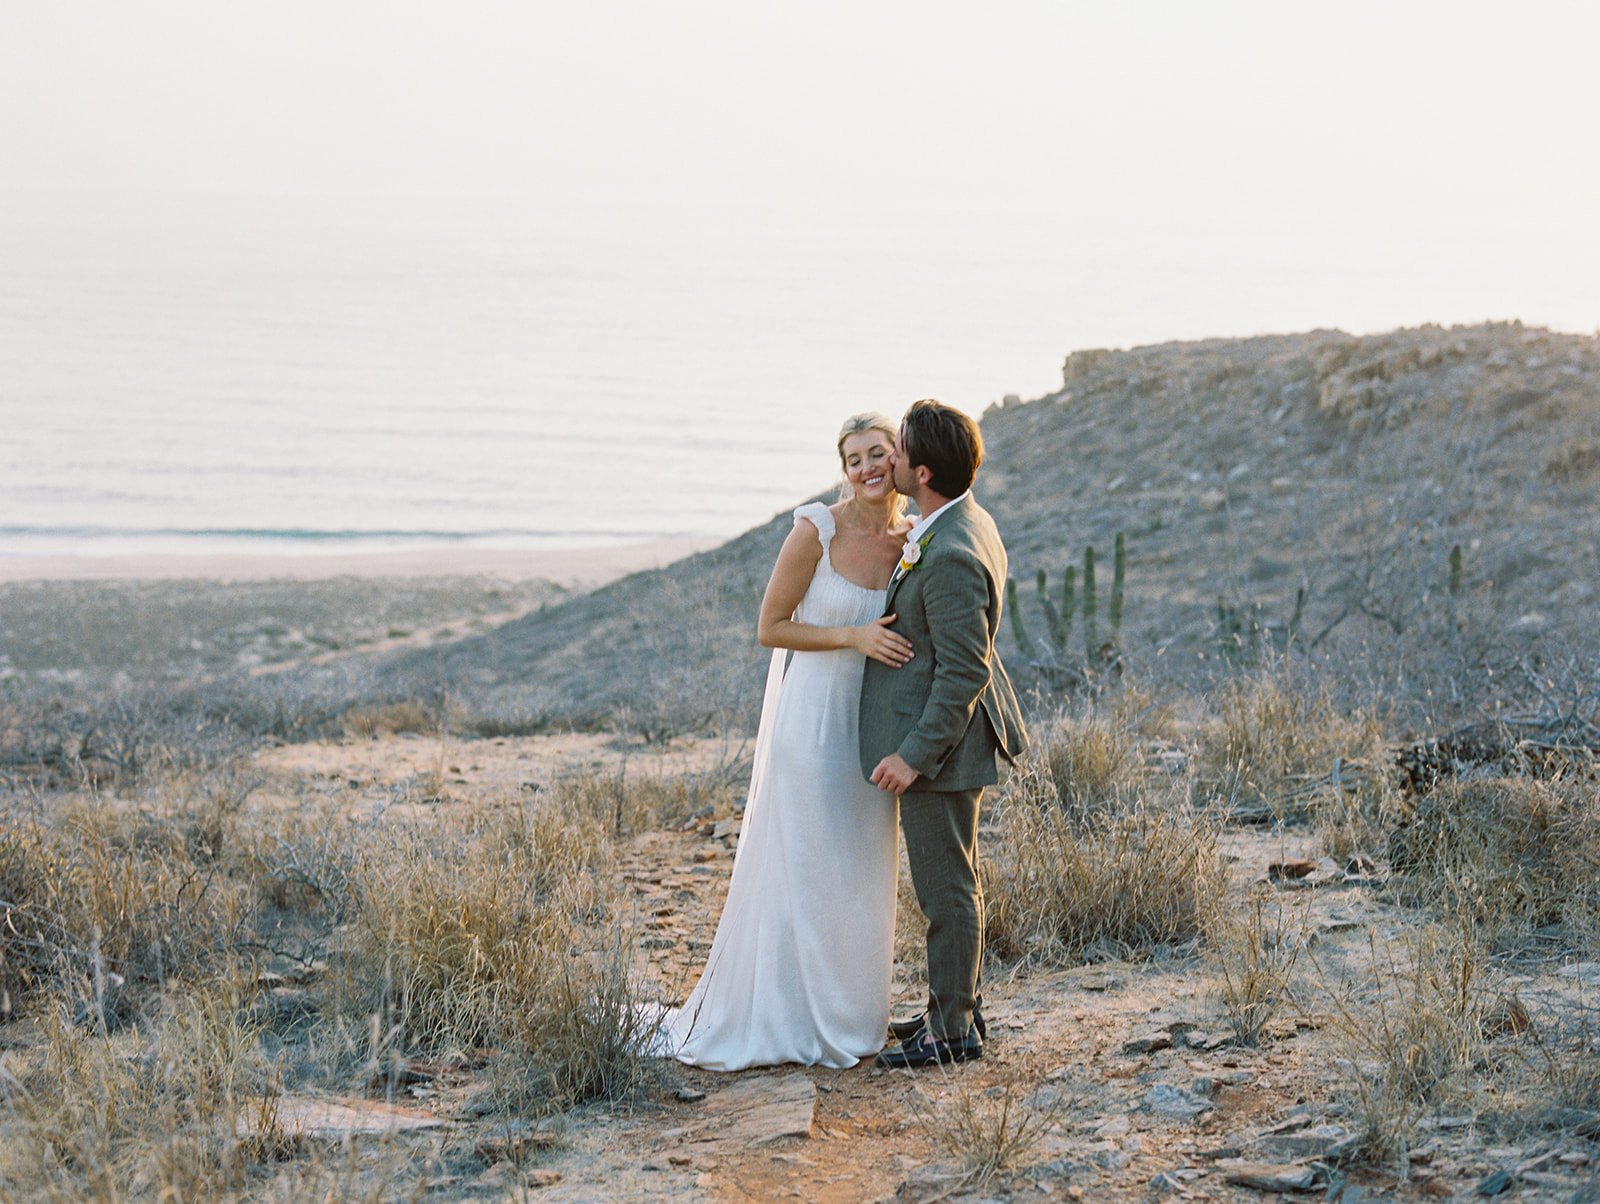 Best-Todos-Santos-Wedding-Photographer-Baja-El Mirador-La Bohemia-35mm-Film-Austin-Mexico-172.jpg